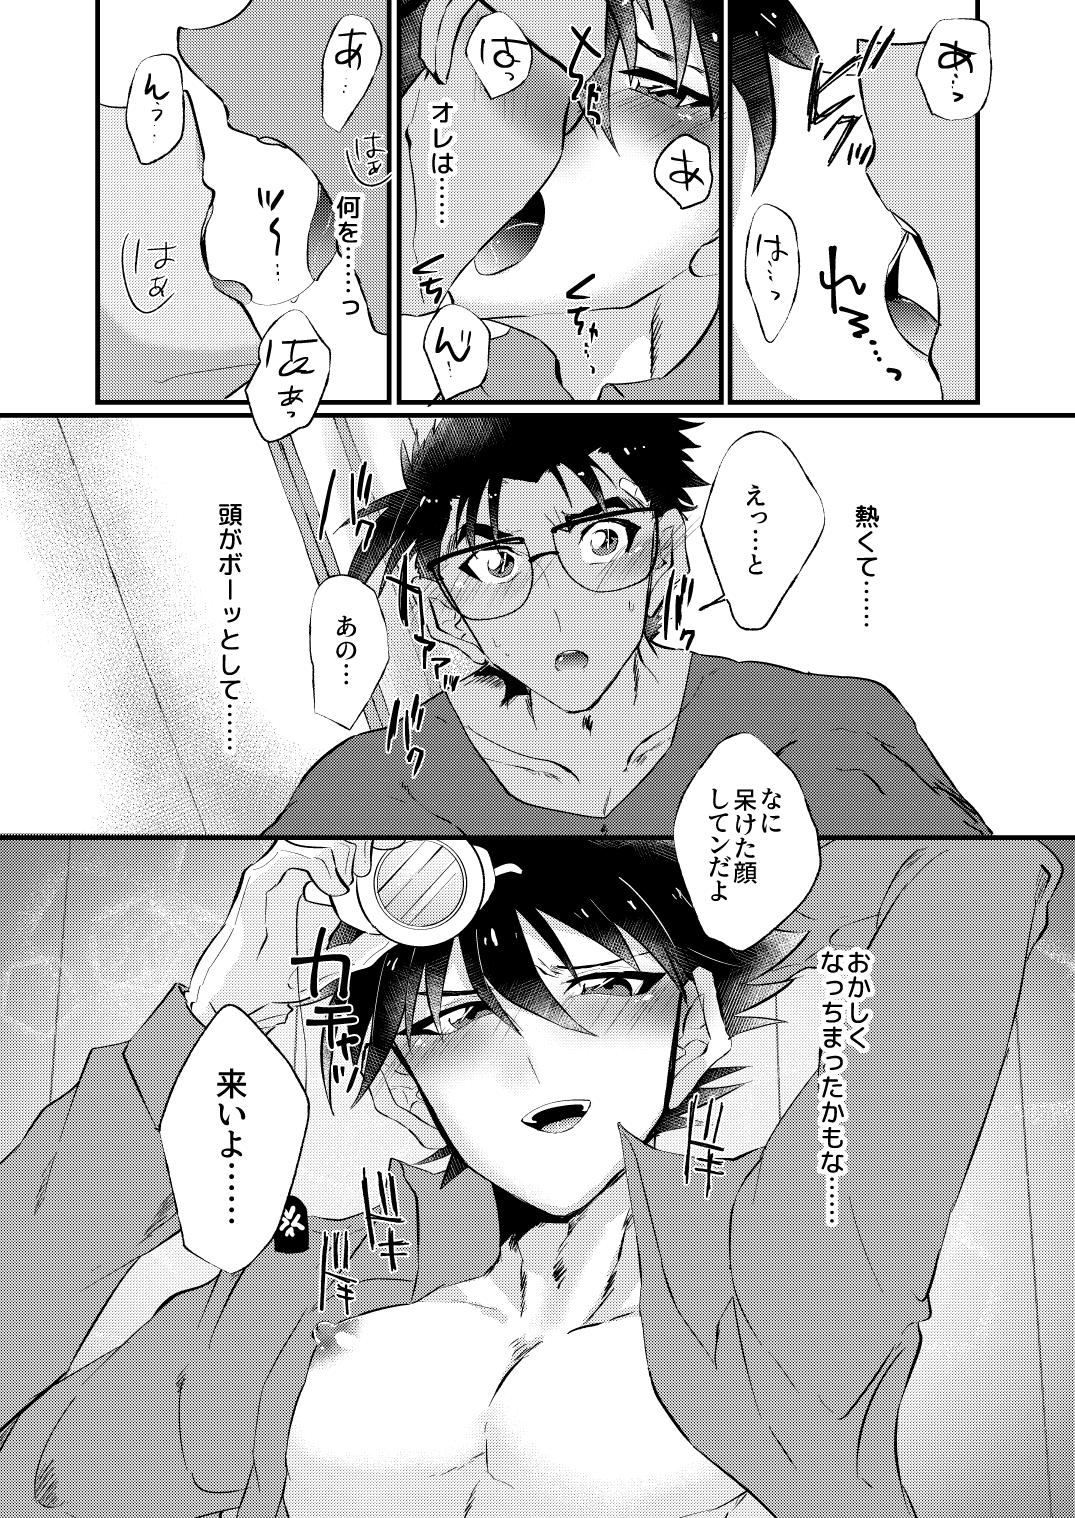 [404] (Detective Conan) [Digital] 13